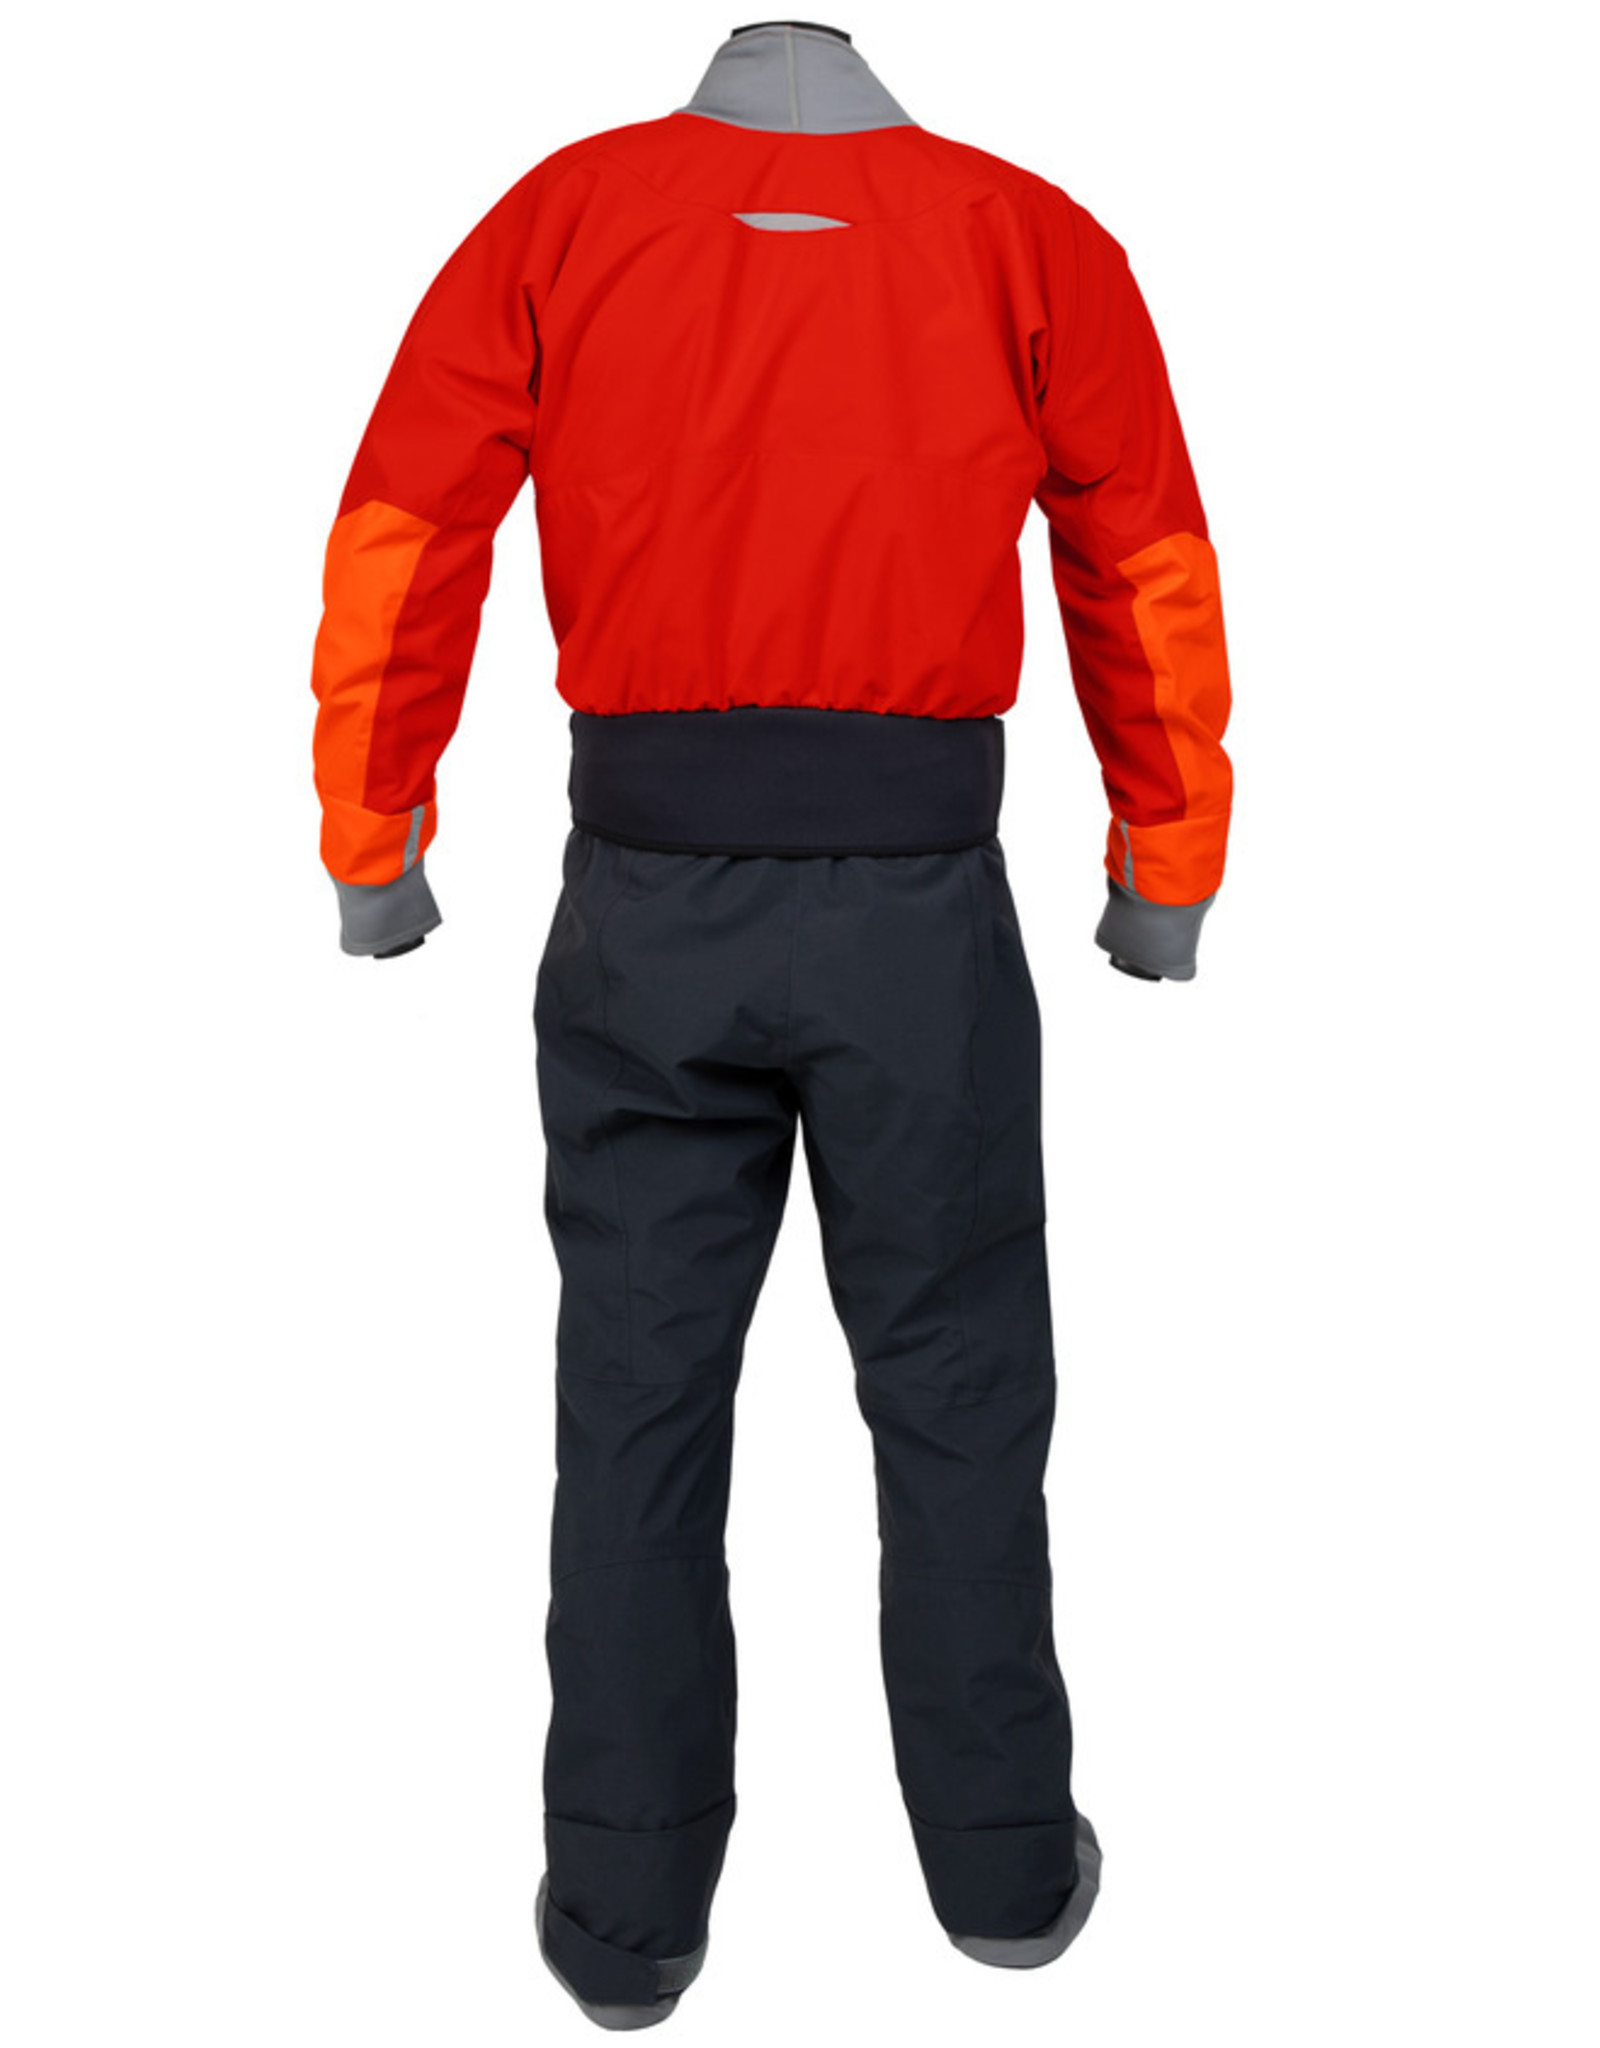 Kokatat Kokatat Dry Suit Meridian (GORE-TEX)